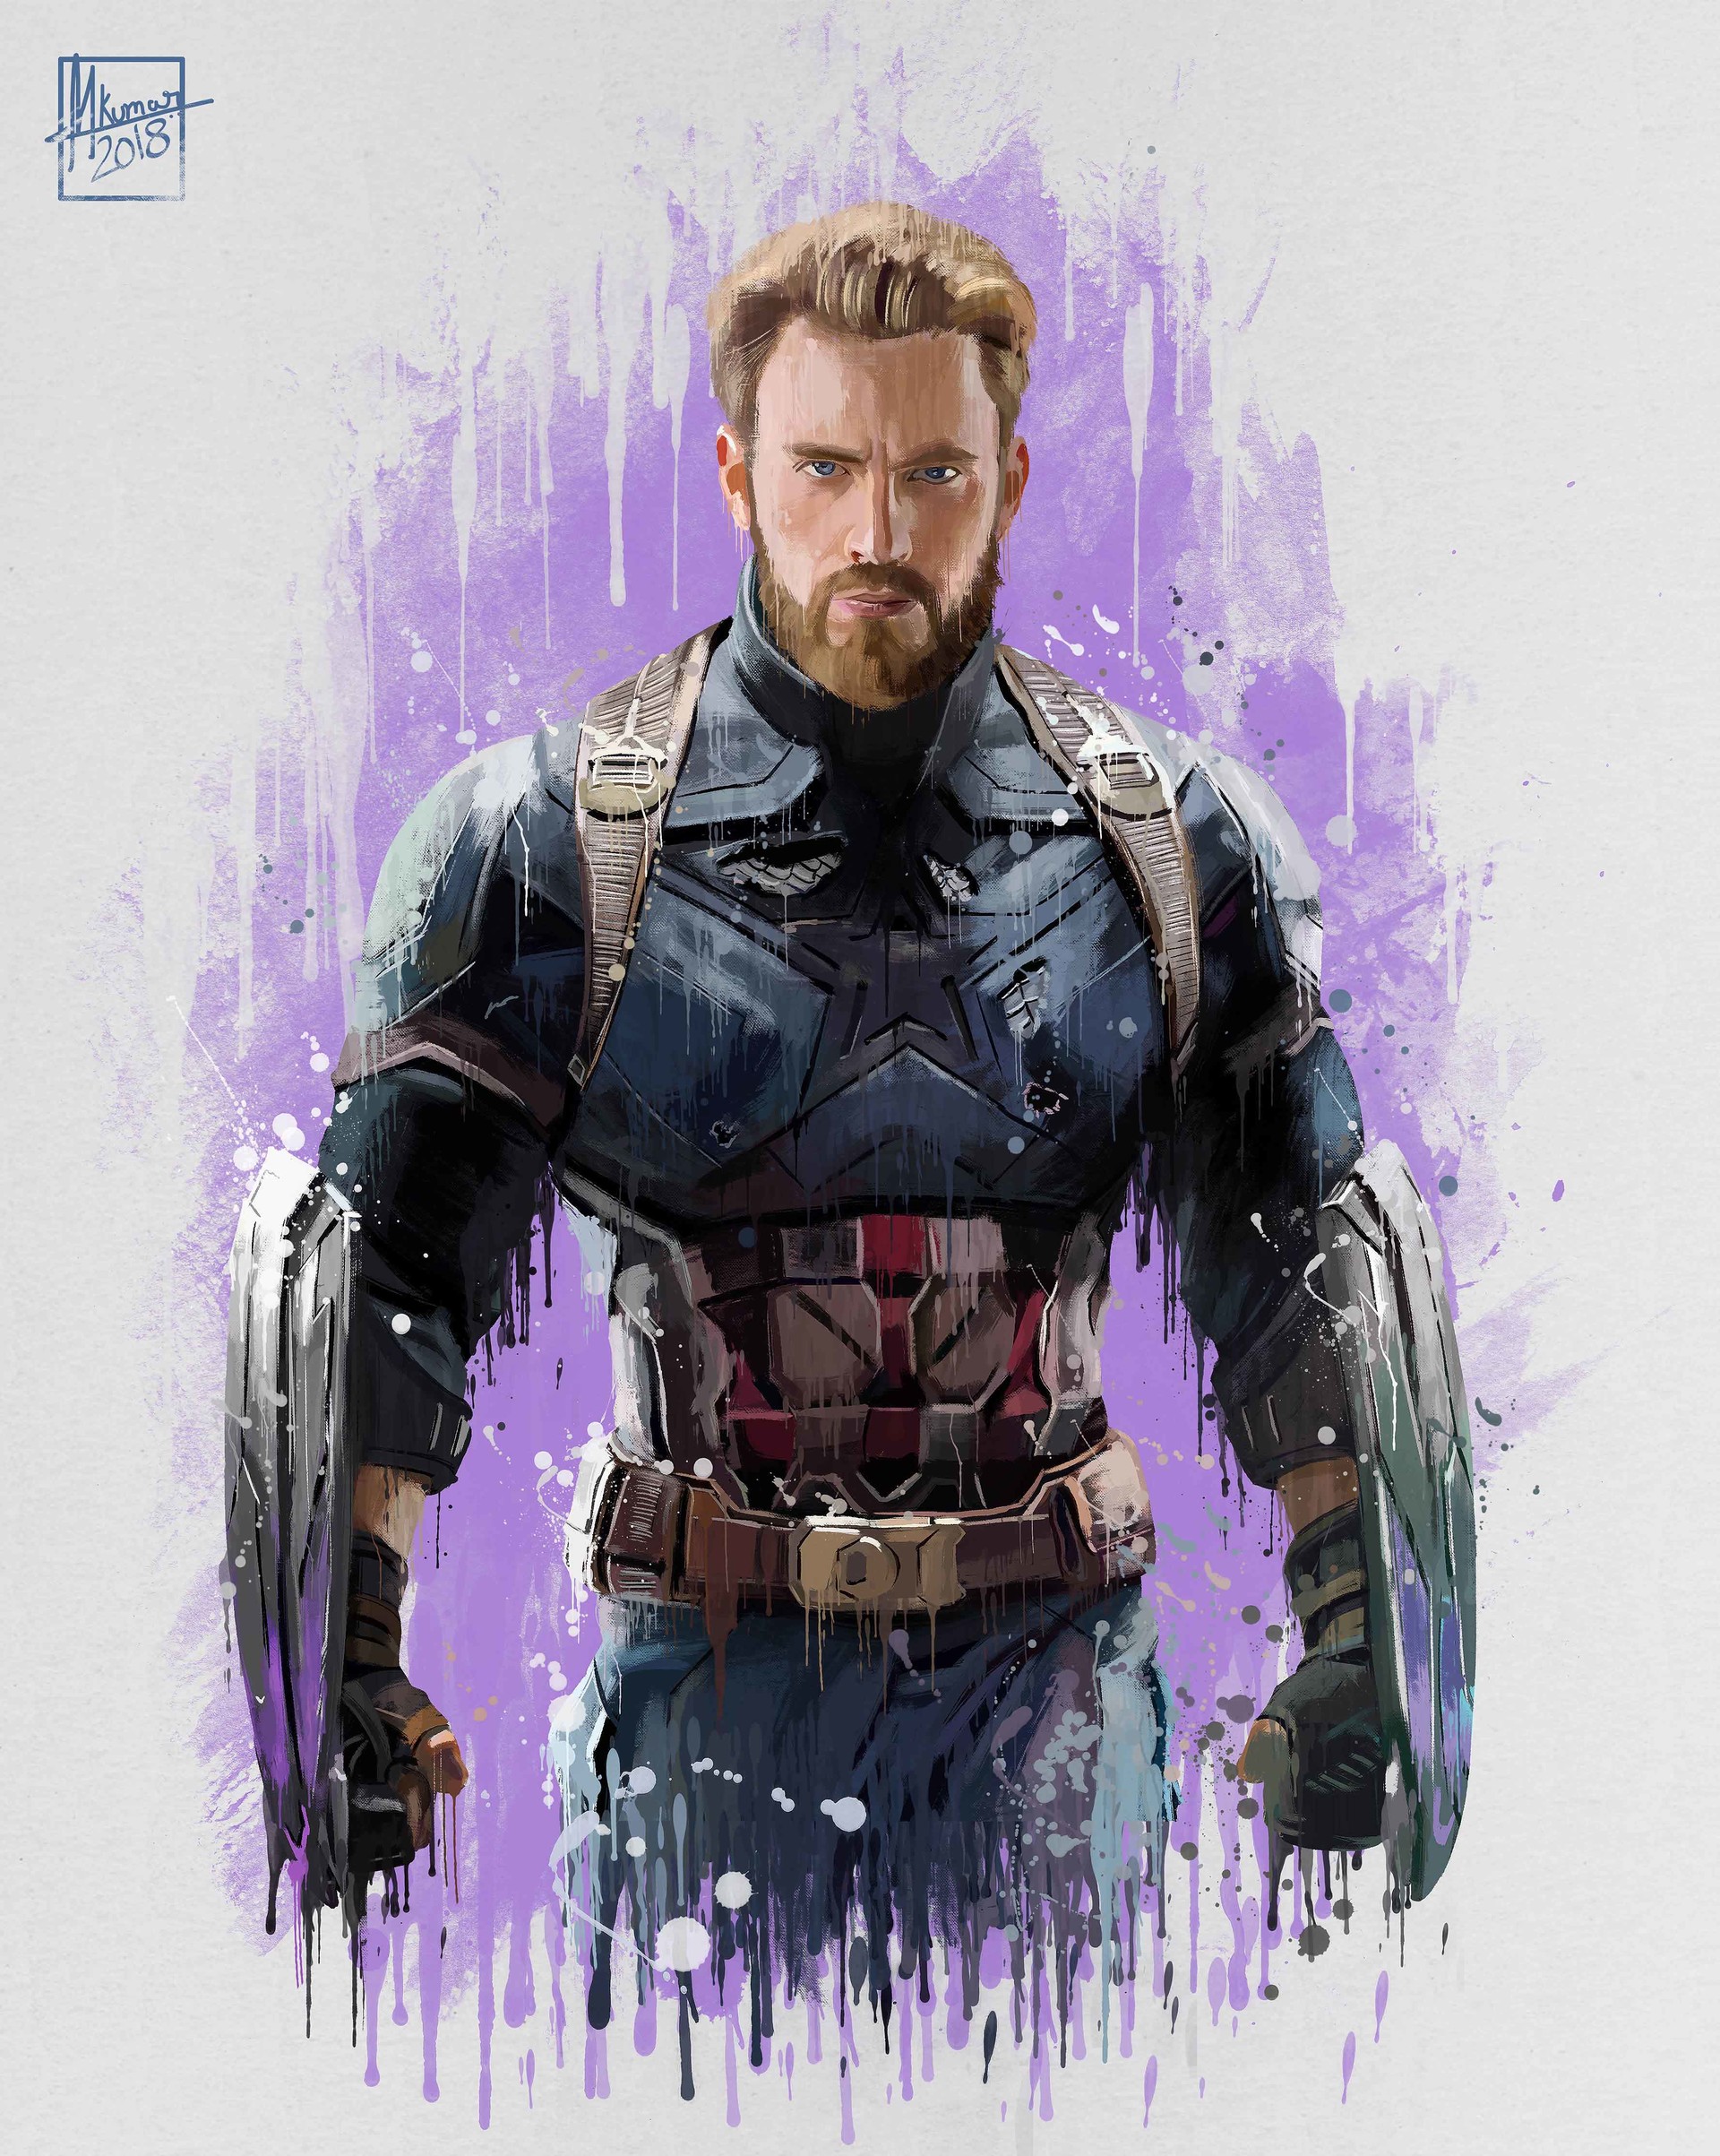 The Marvel Avengers Infinity War Captain America Art Poster.jpg